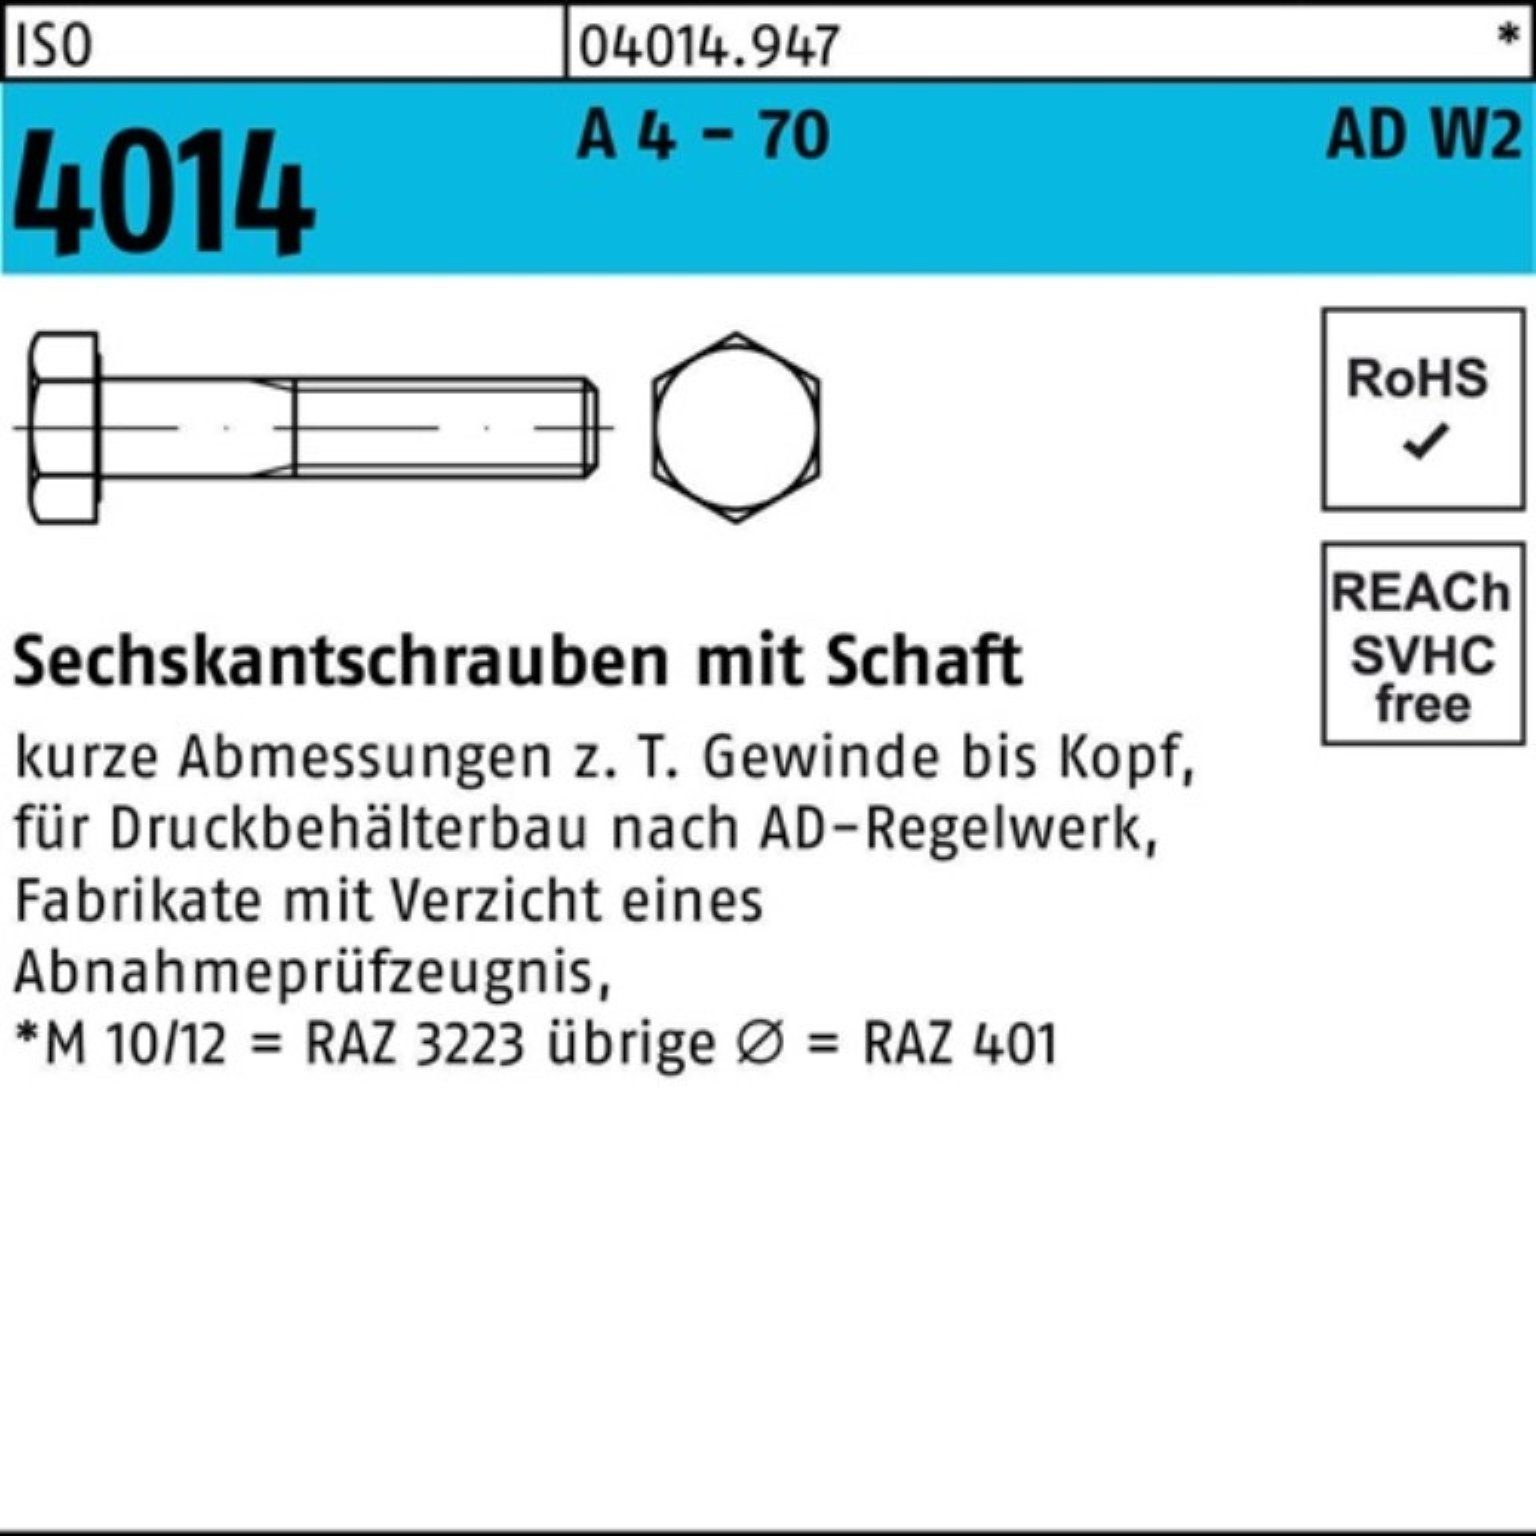 Bufab Sechskantschraube 100er Pack Sechskantschraube ISO 4014 Schaft M20x 200 A 4 - 70 AD-W2 1